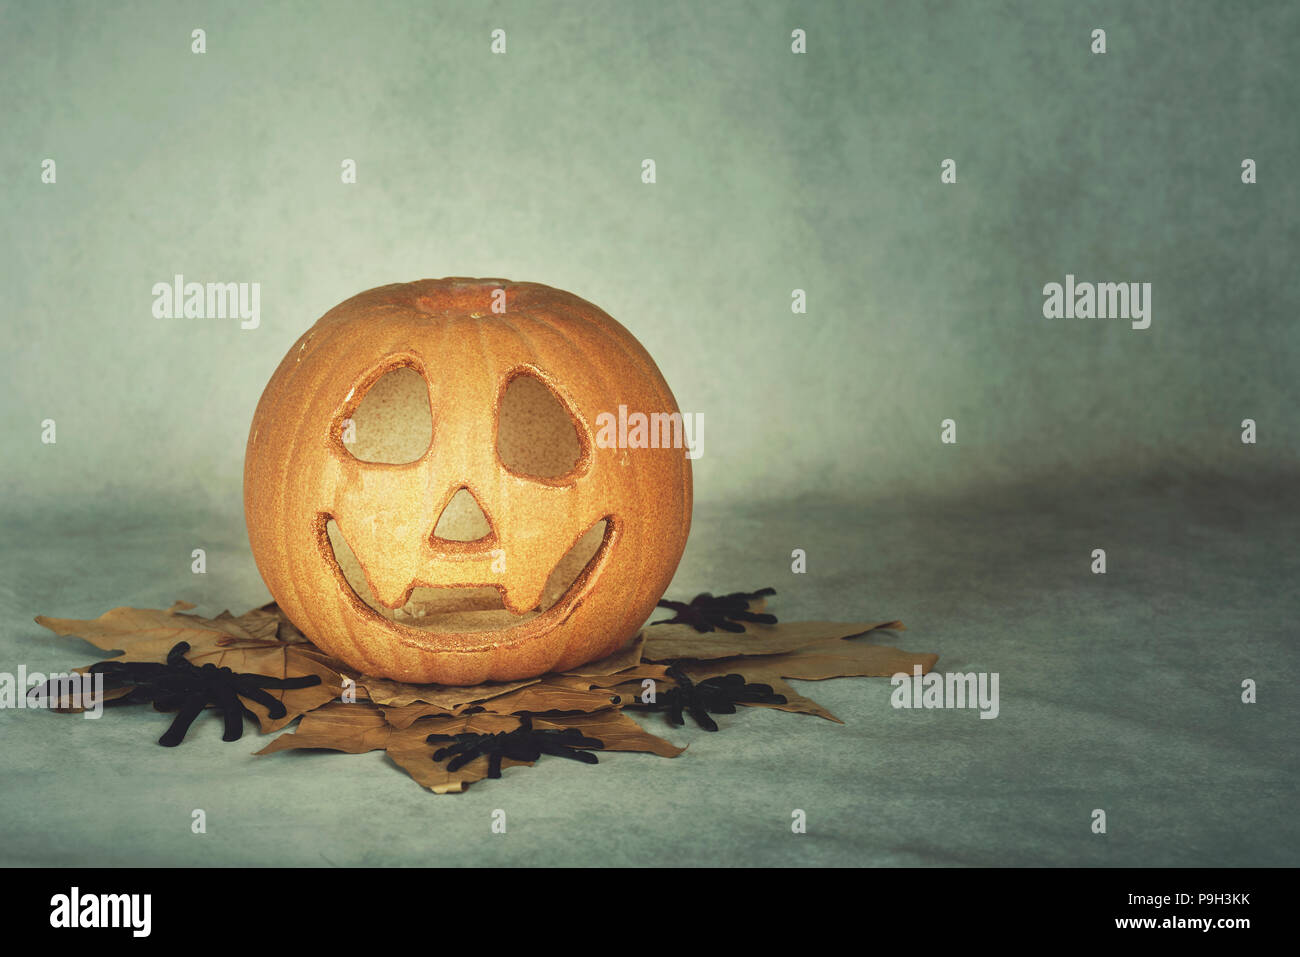 Scary Halloween zucca su sfondo grigio Foto Stock